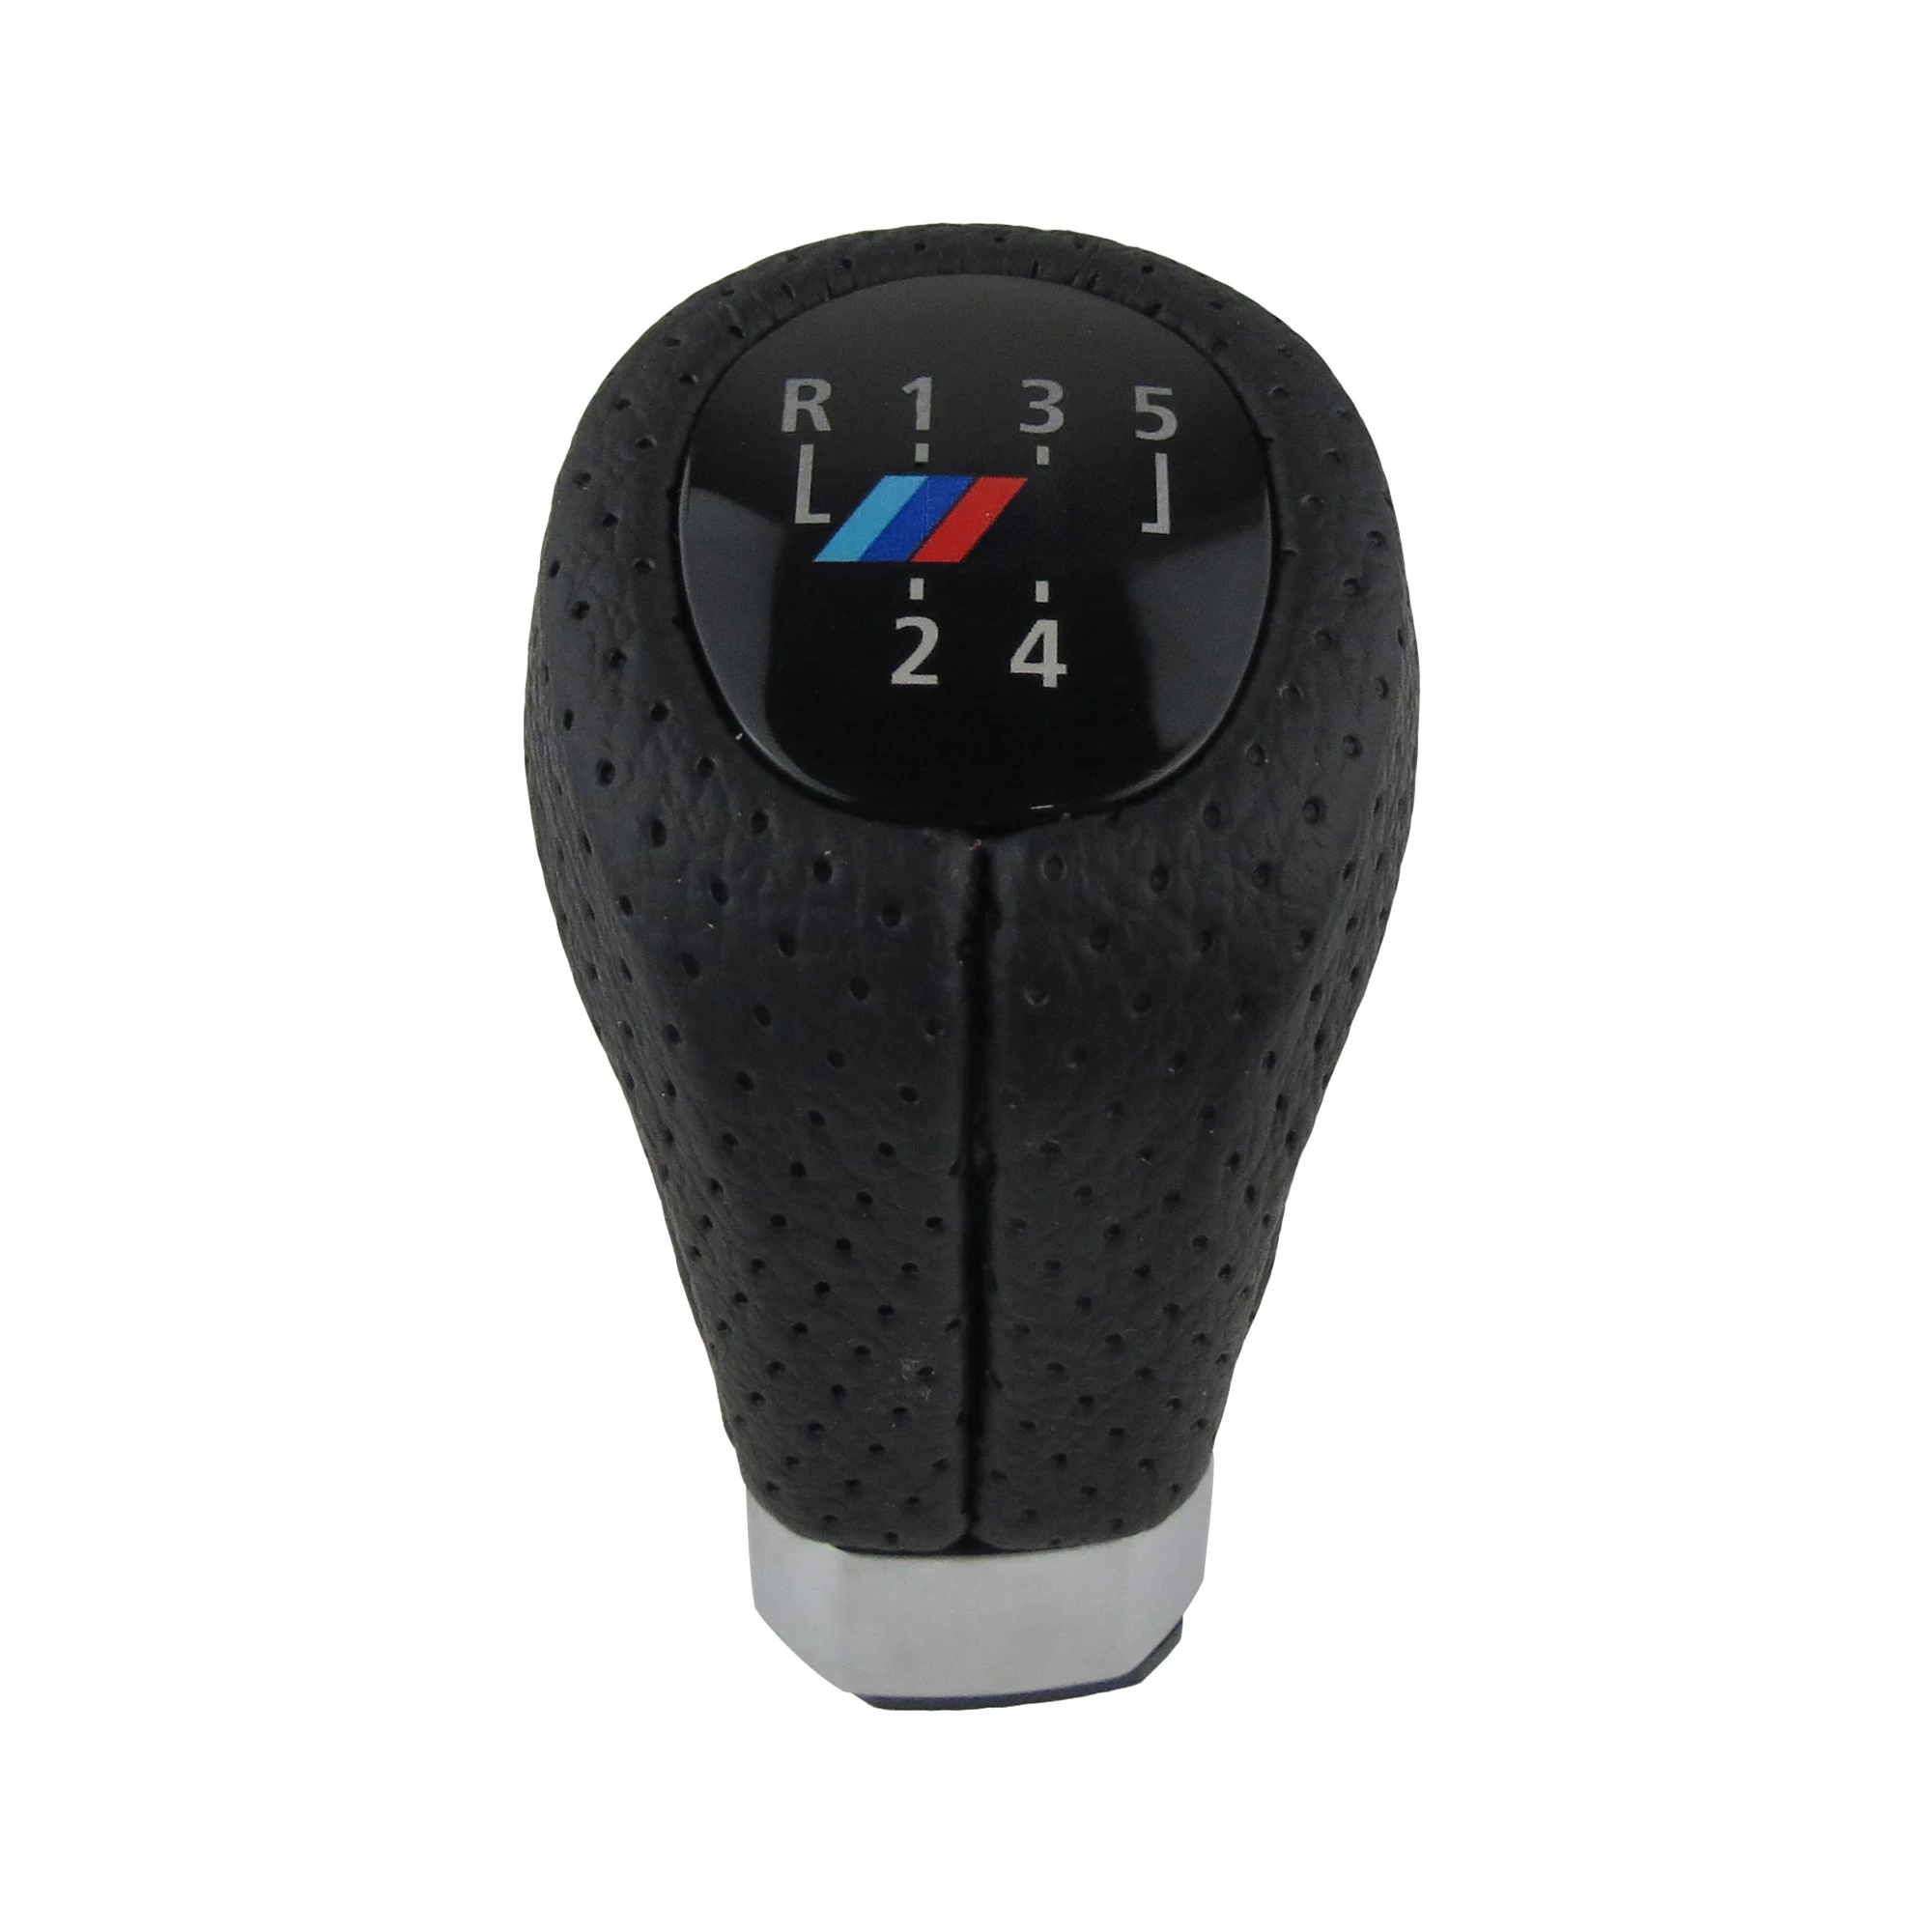 FaroeChi 5 Speed Gear Shift Knob With M Logo For BMW 1 3 Series E81 E82 E87 E88 E90 E91 E92 E93